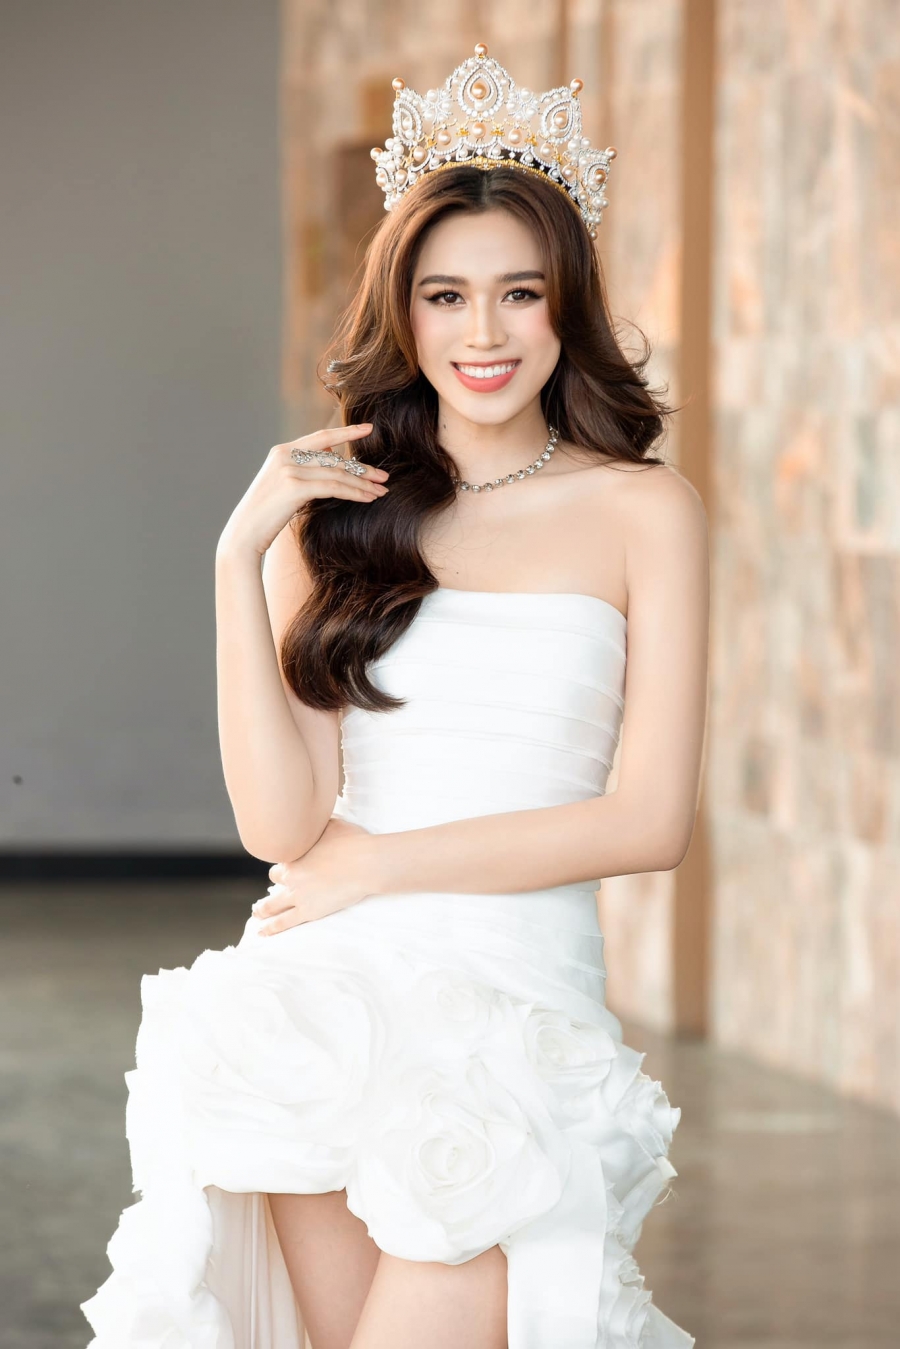 Chiếc váy khiến ca sĩ Thủy Tiên phải 'chào thua' trước Hoa hậu Đỗ Thị Hà - Ảnh 4